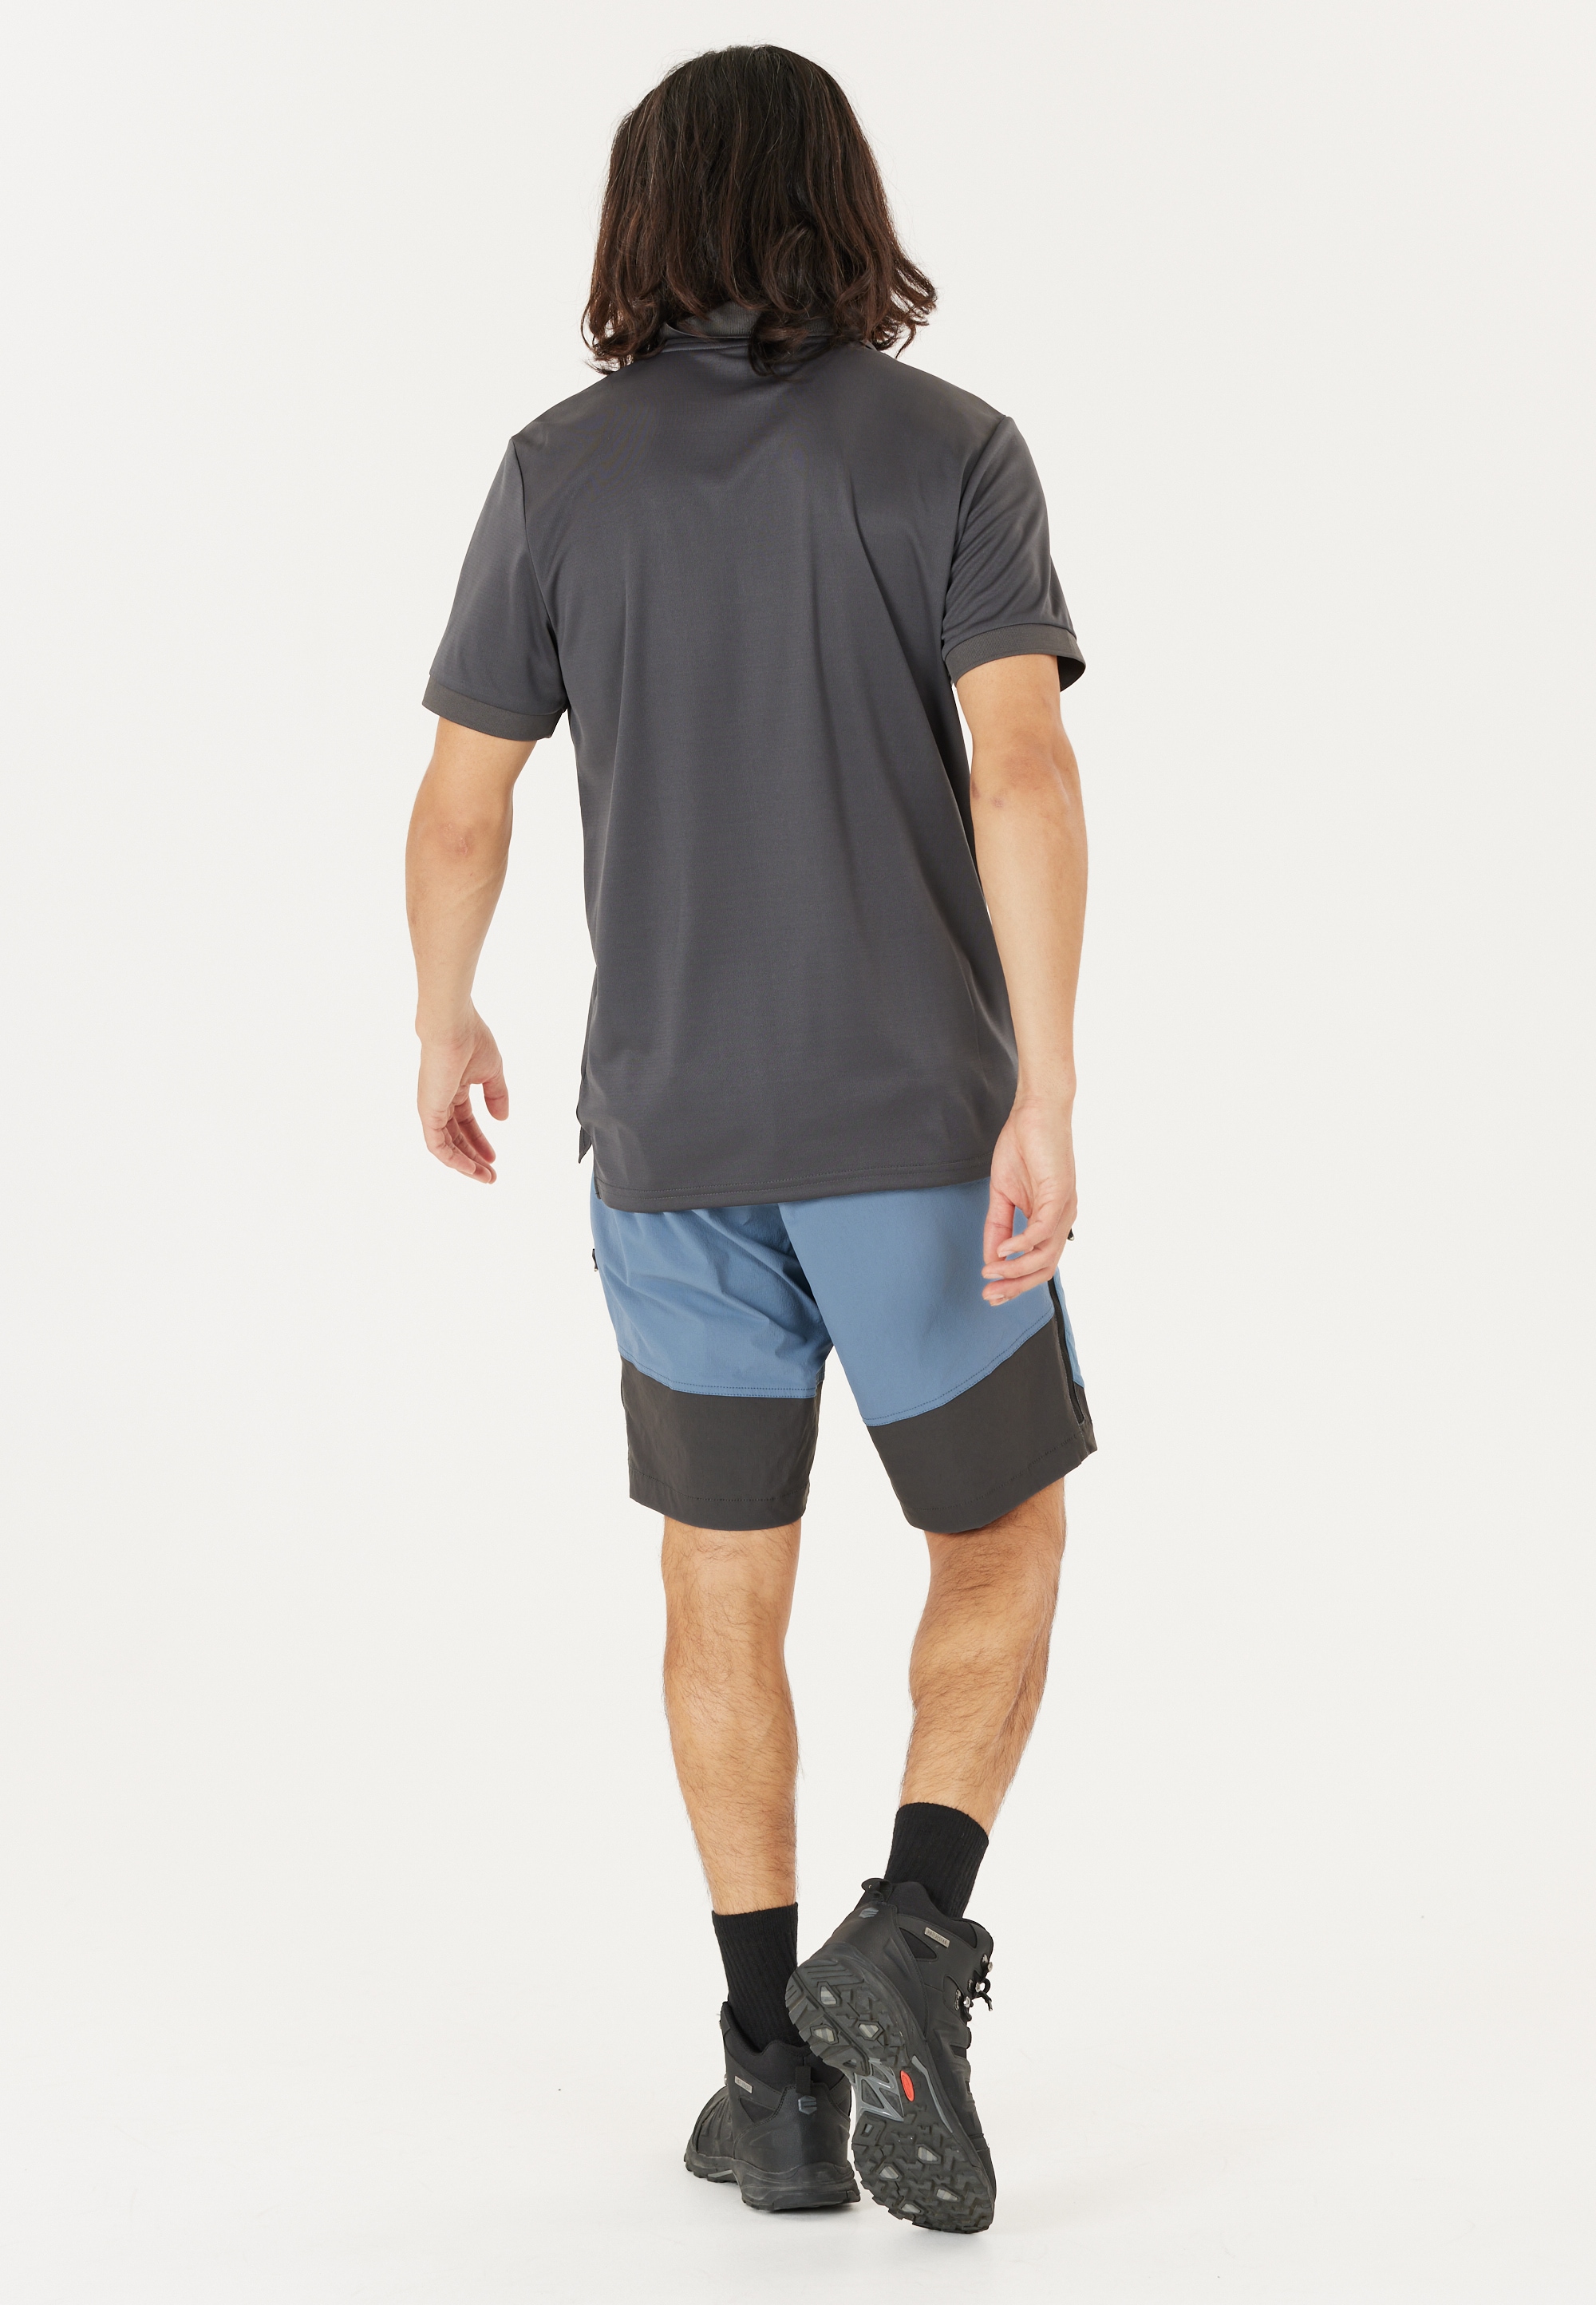 WHISTLER Shorts »Kodiak«, aus funktionalem und wasserabweisendem Material